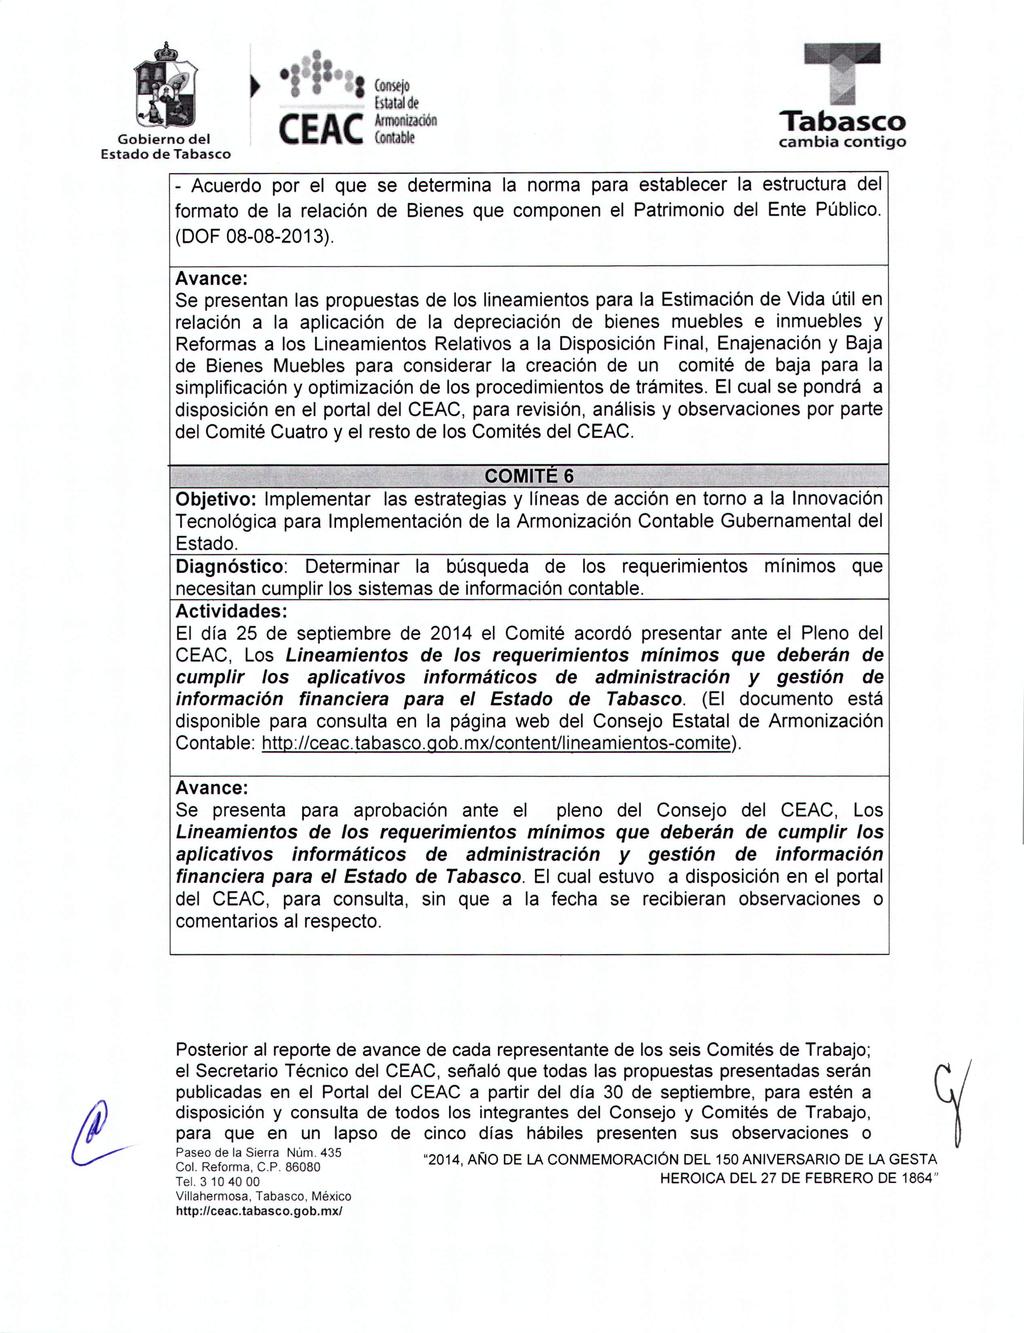 - Acuerdo por el que se determina la norma para establecer la estructura del formato de la relación de Bienes que componen el Patrimonio del Ente Público. (DOF 08-08-2013).